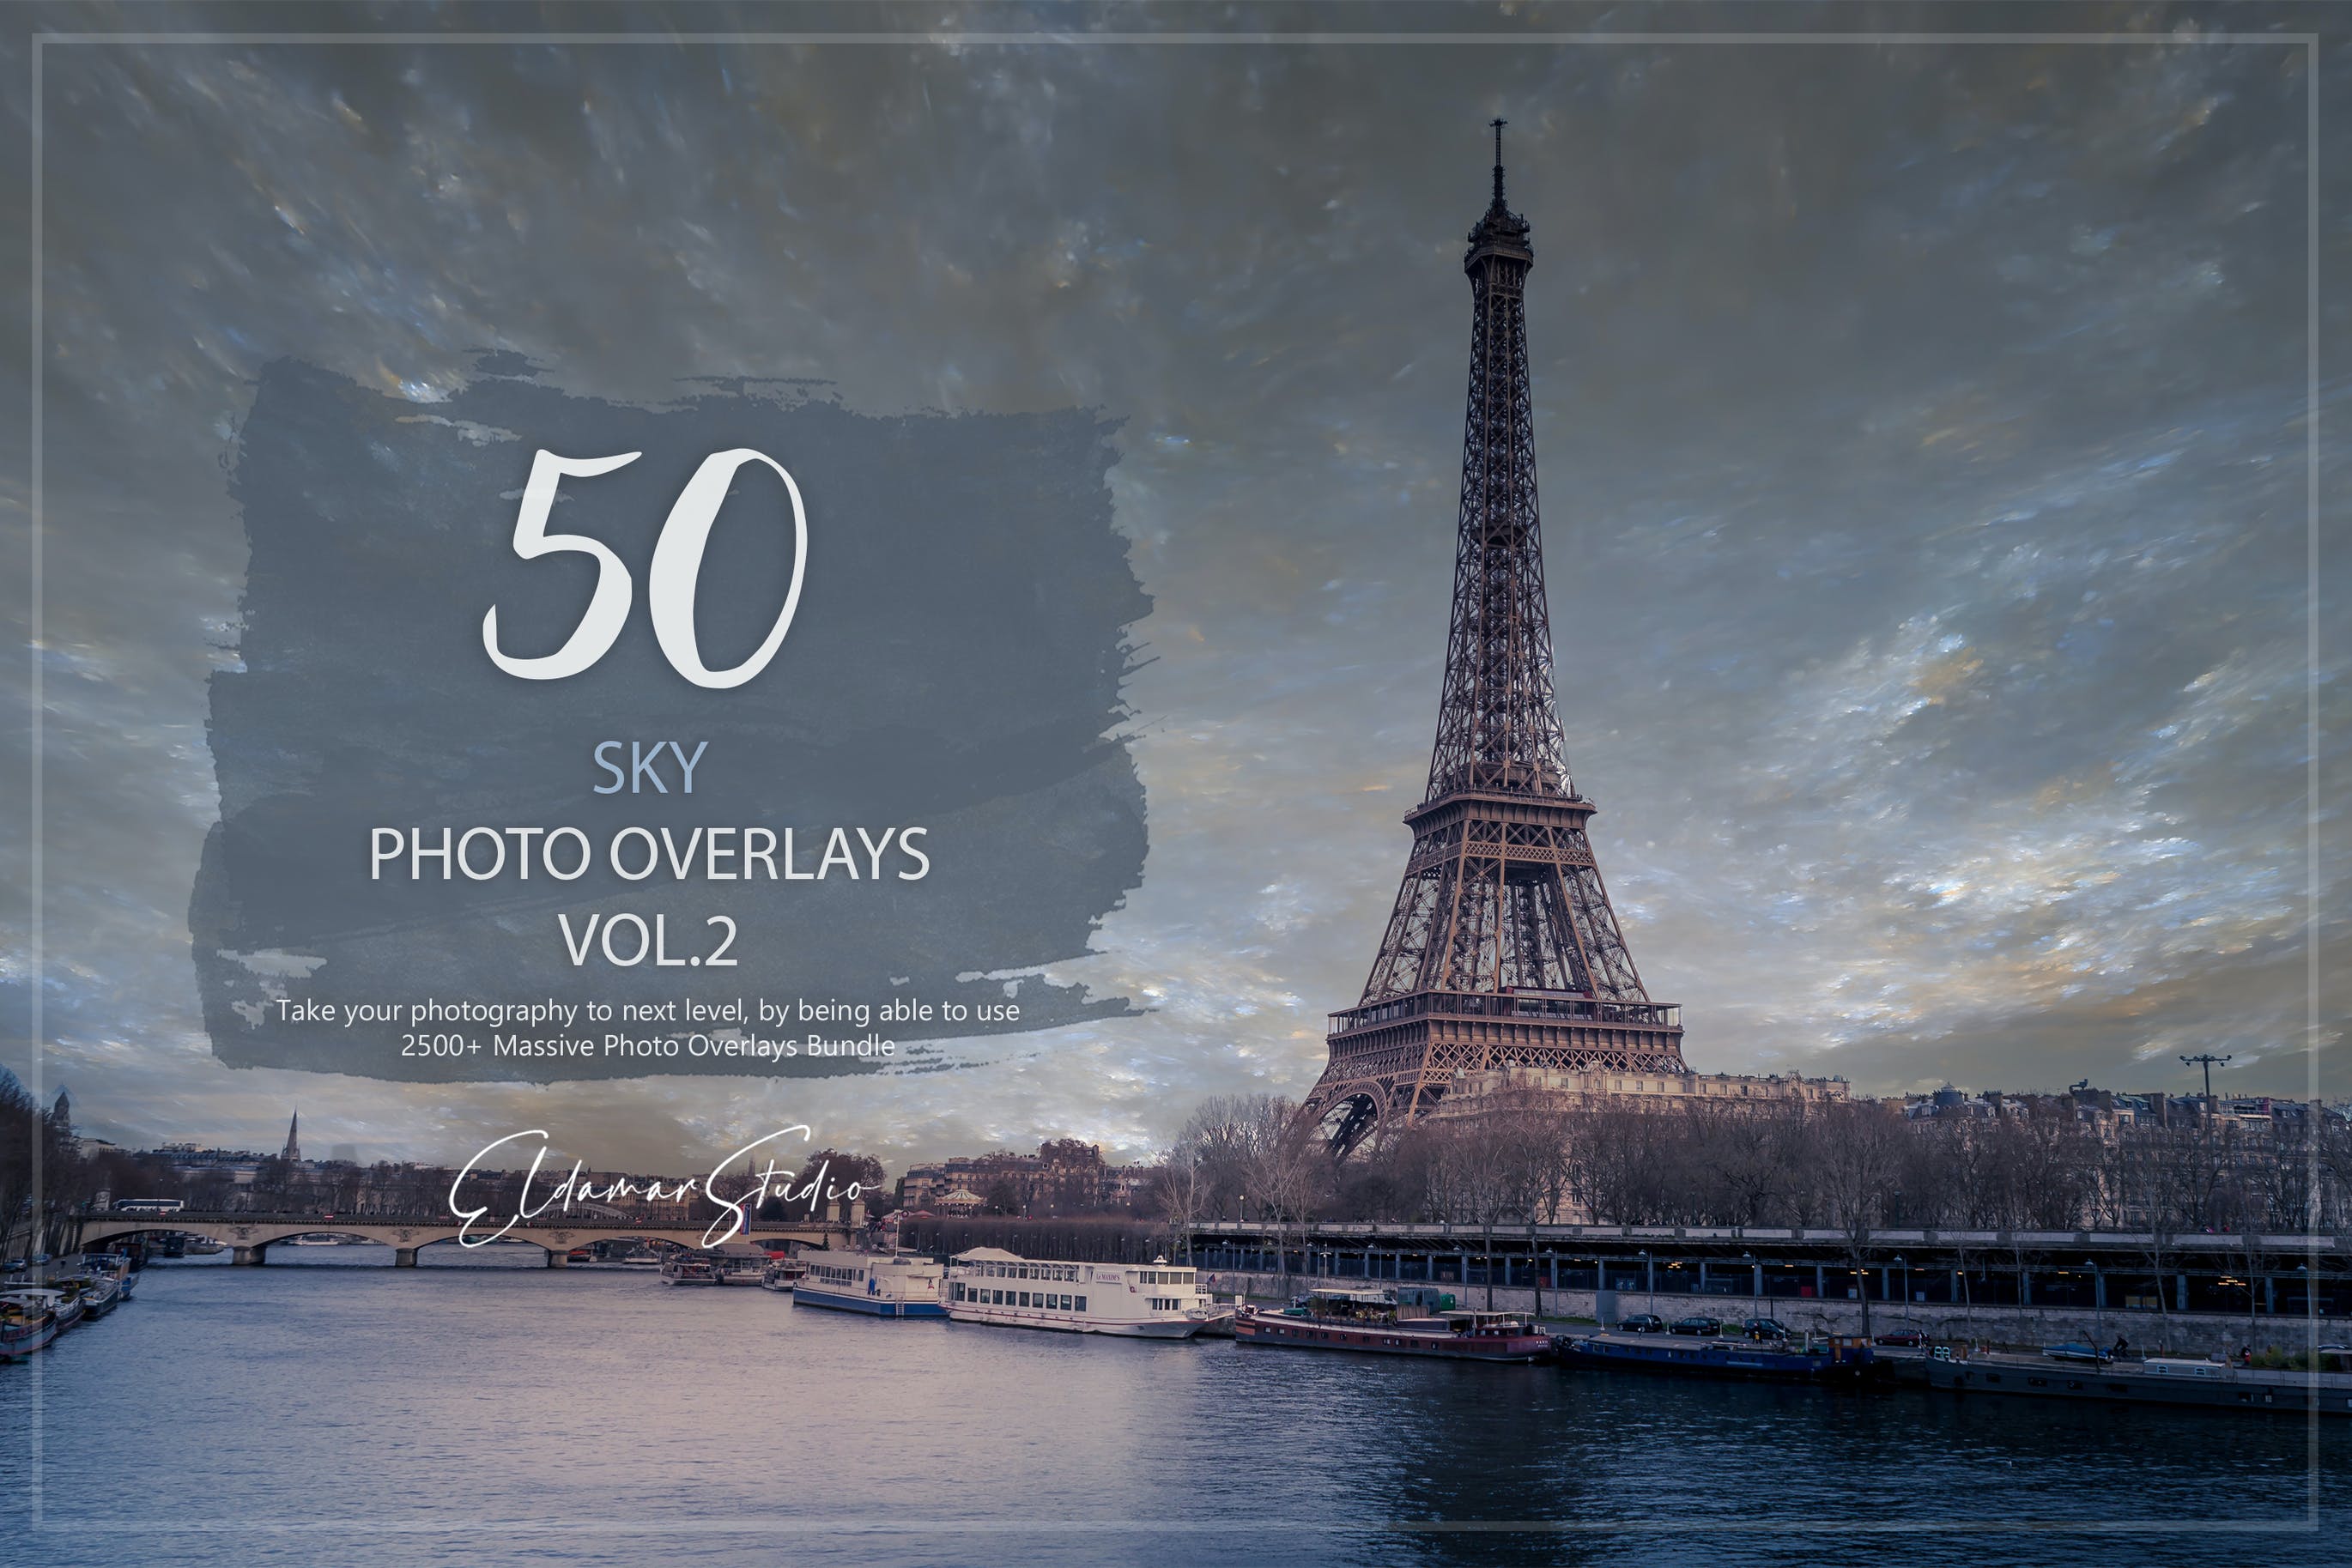 50个天空照片叠层背景素材v2 50 Sky Photo Overlays – Vol. 2 图片素材 第1张